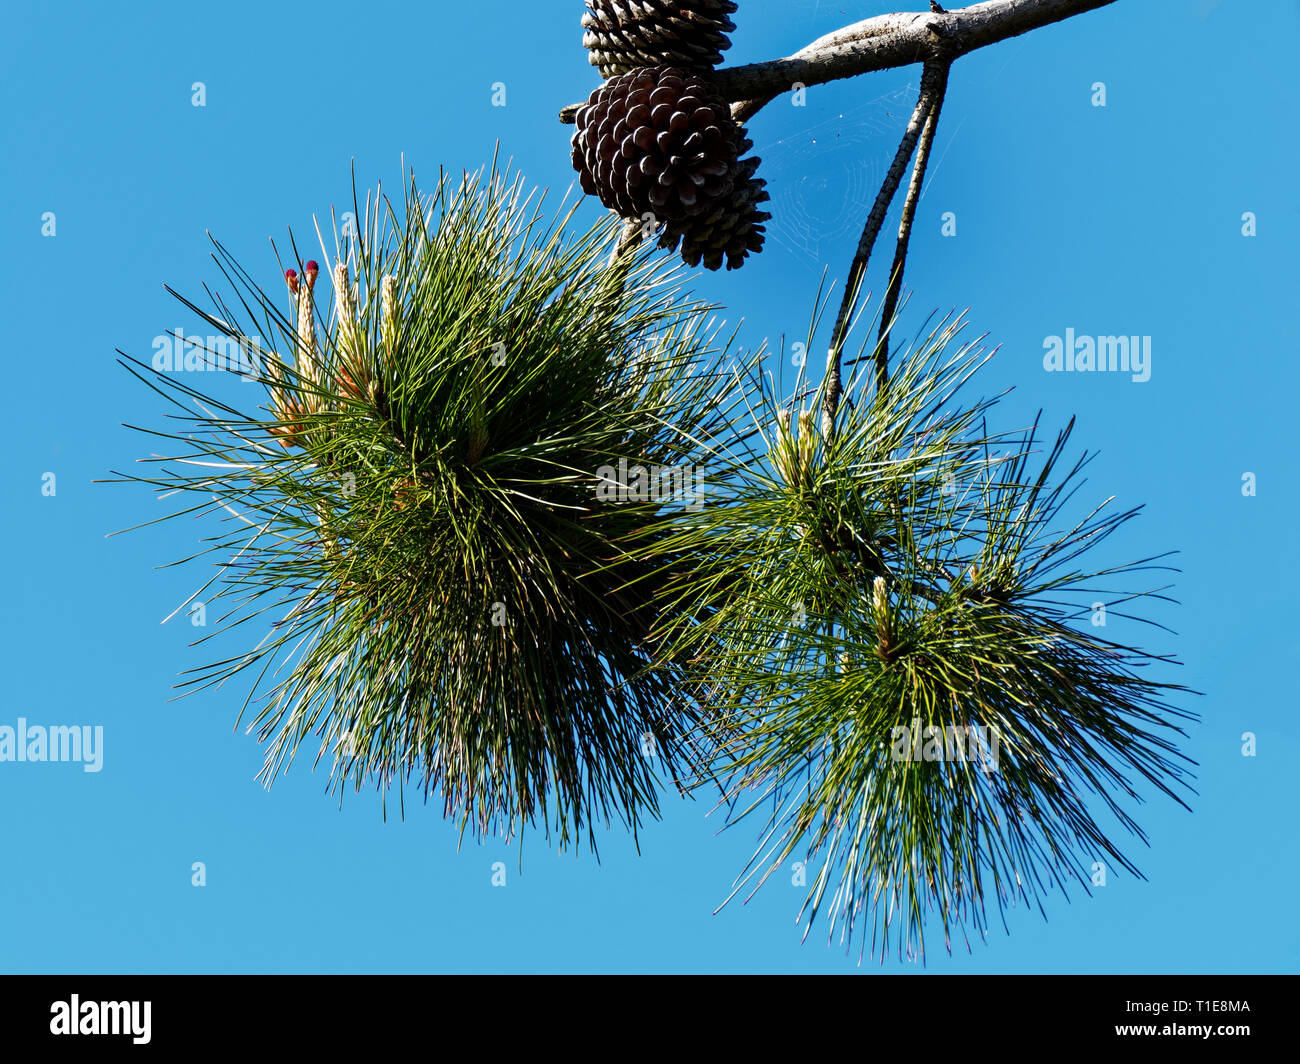 Pine Tree, Cones and Needles. UK Stock Photo